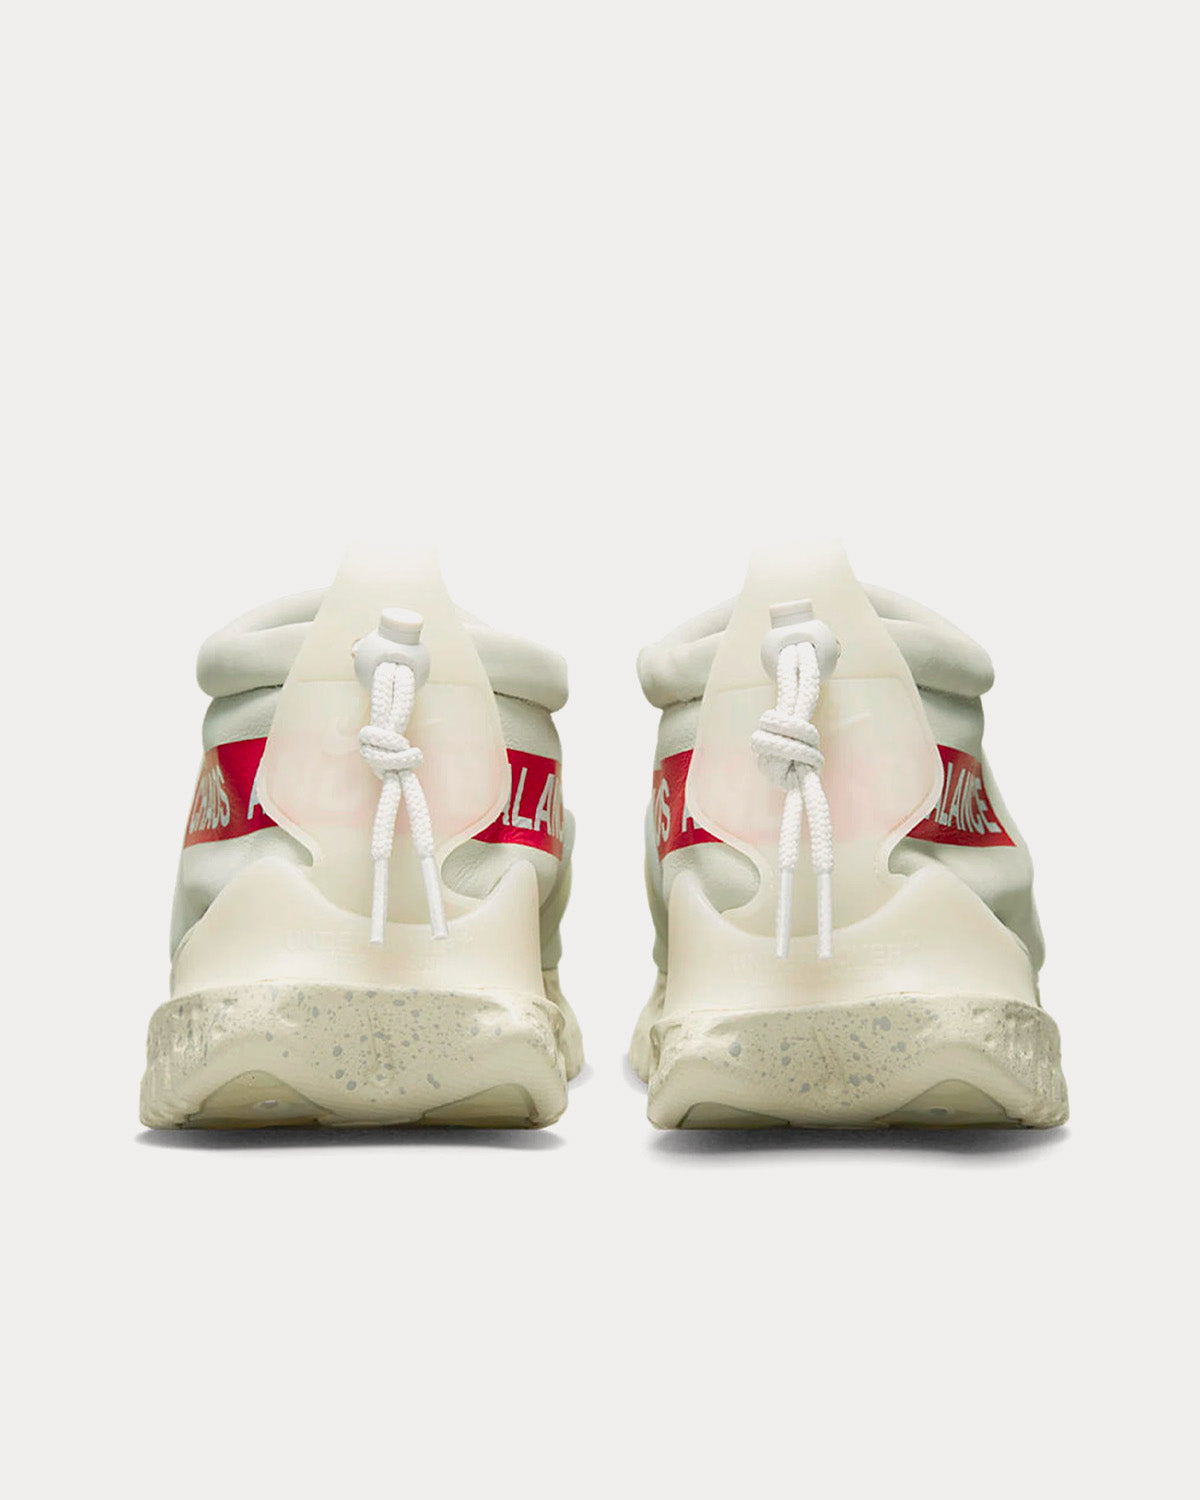 Nike x Undercover - Moc Flow Light Bone / University Red / White Slip On Sneakers